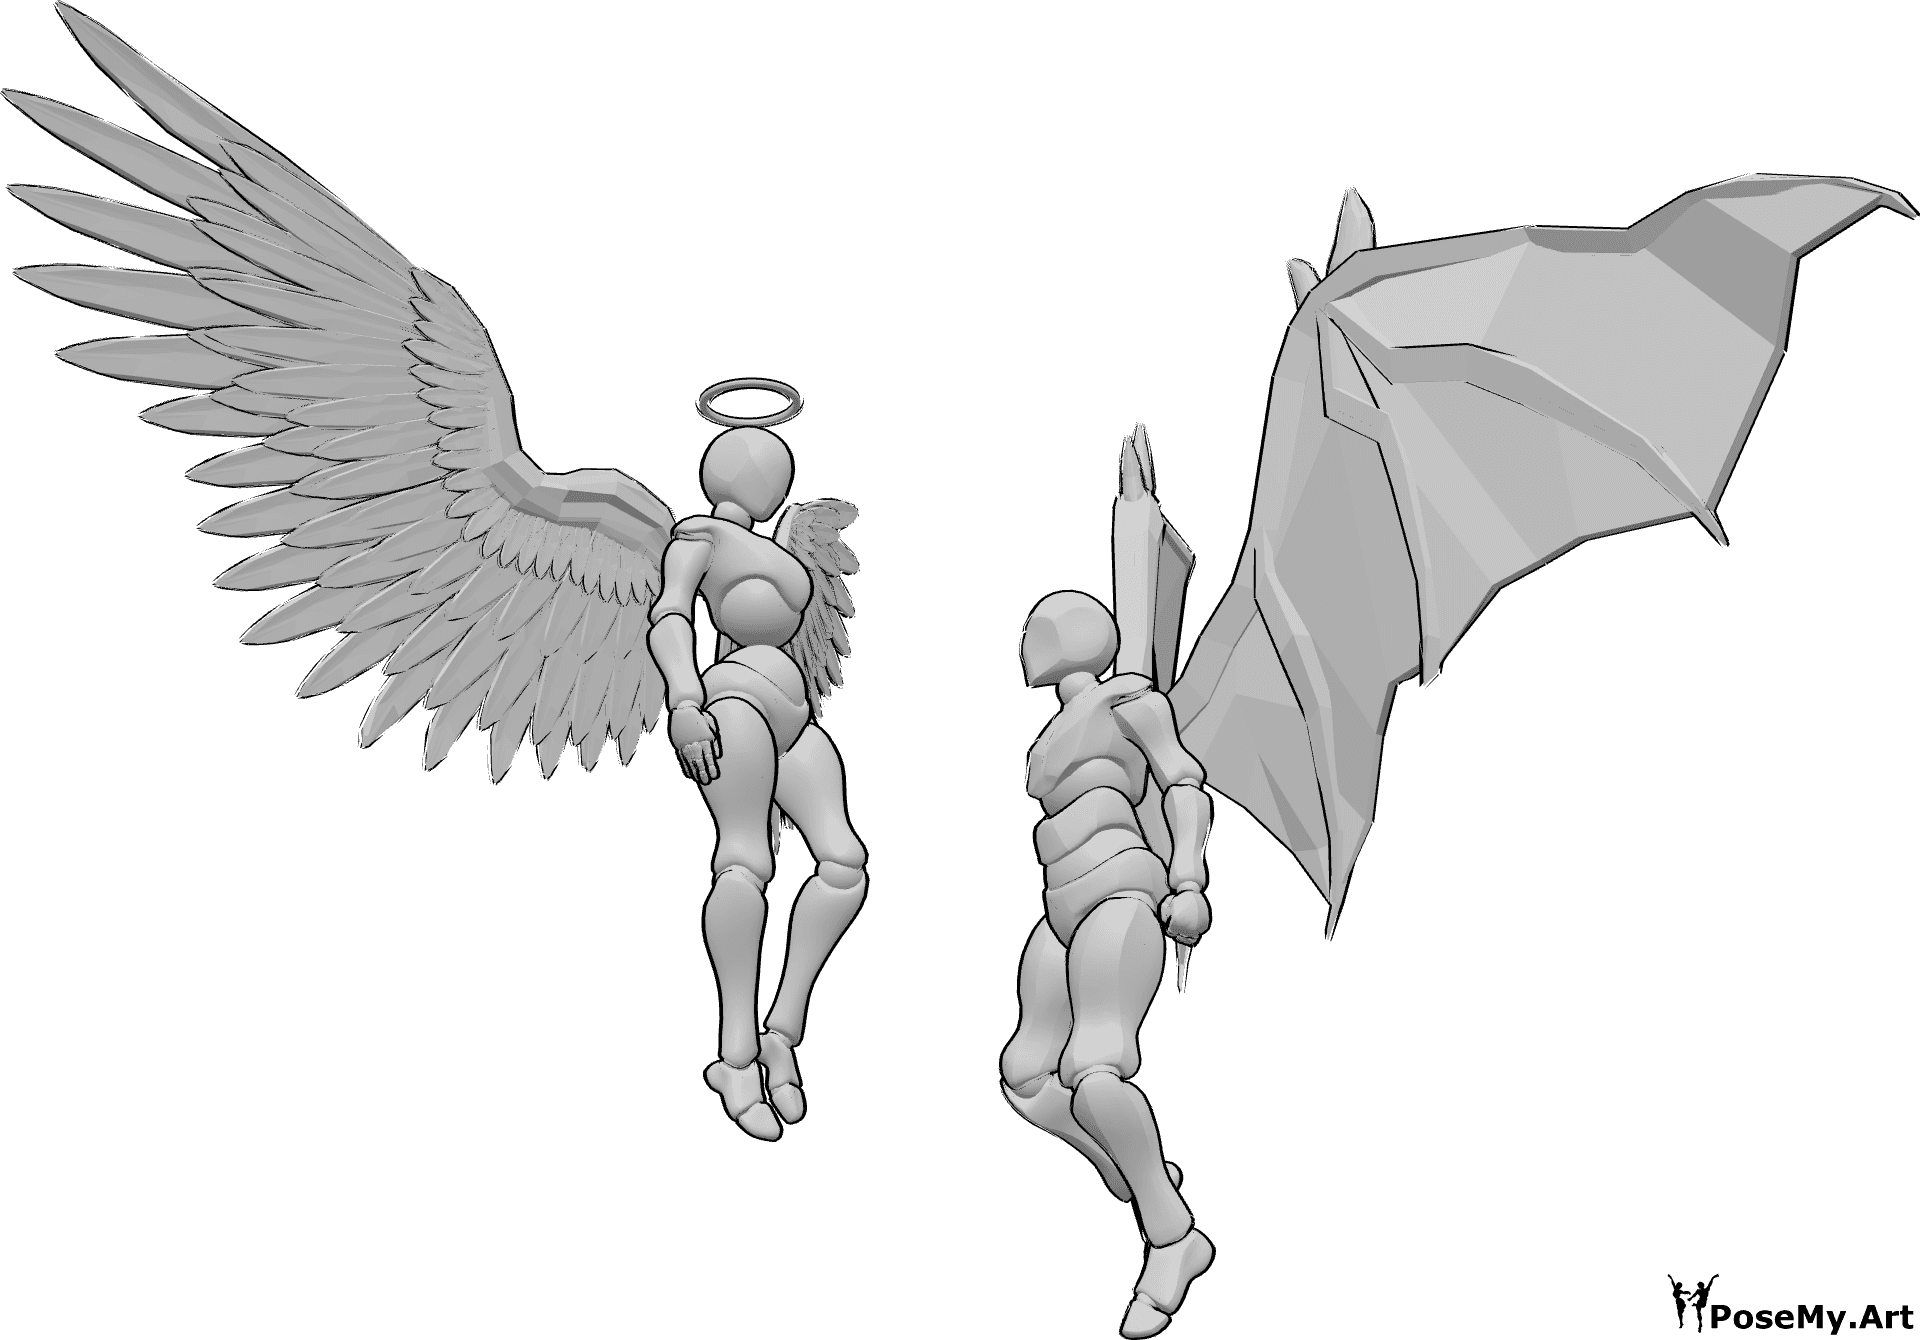 Référence des poses- Pose de l'ange et du démon - Un ange féminin et un démon masculin flottent dans les airs et se regardent, l'ange le regarde de haut, le démon masculin serre les poings.